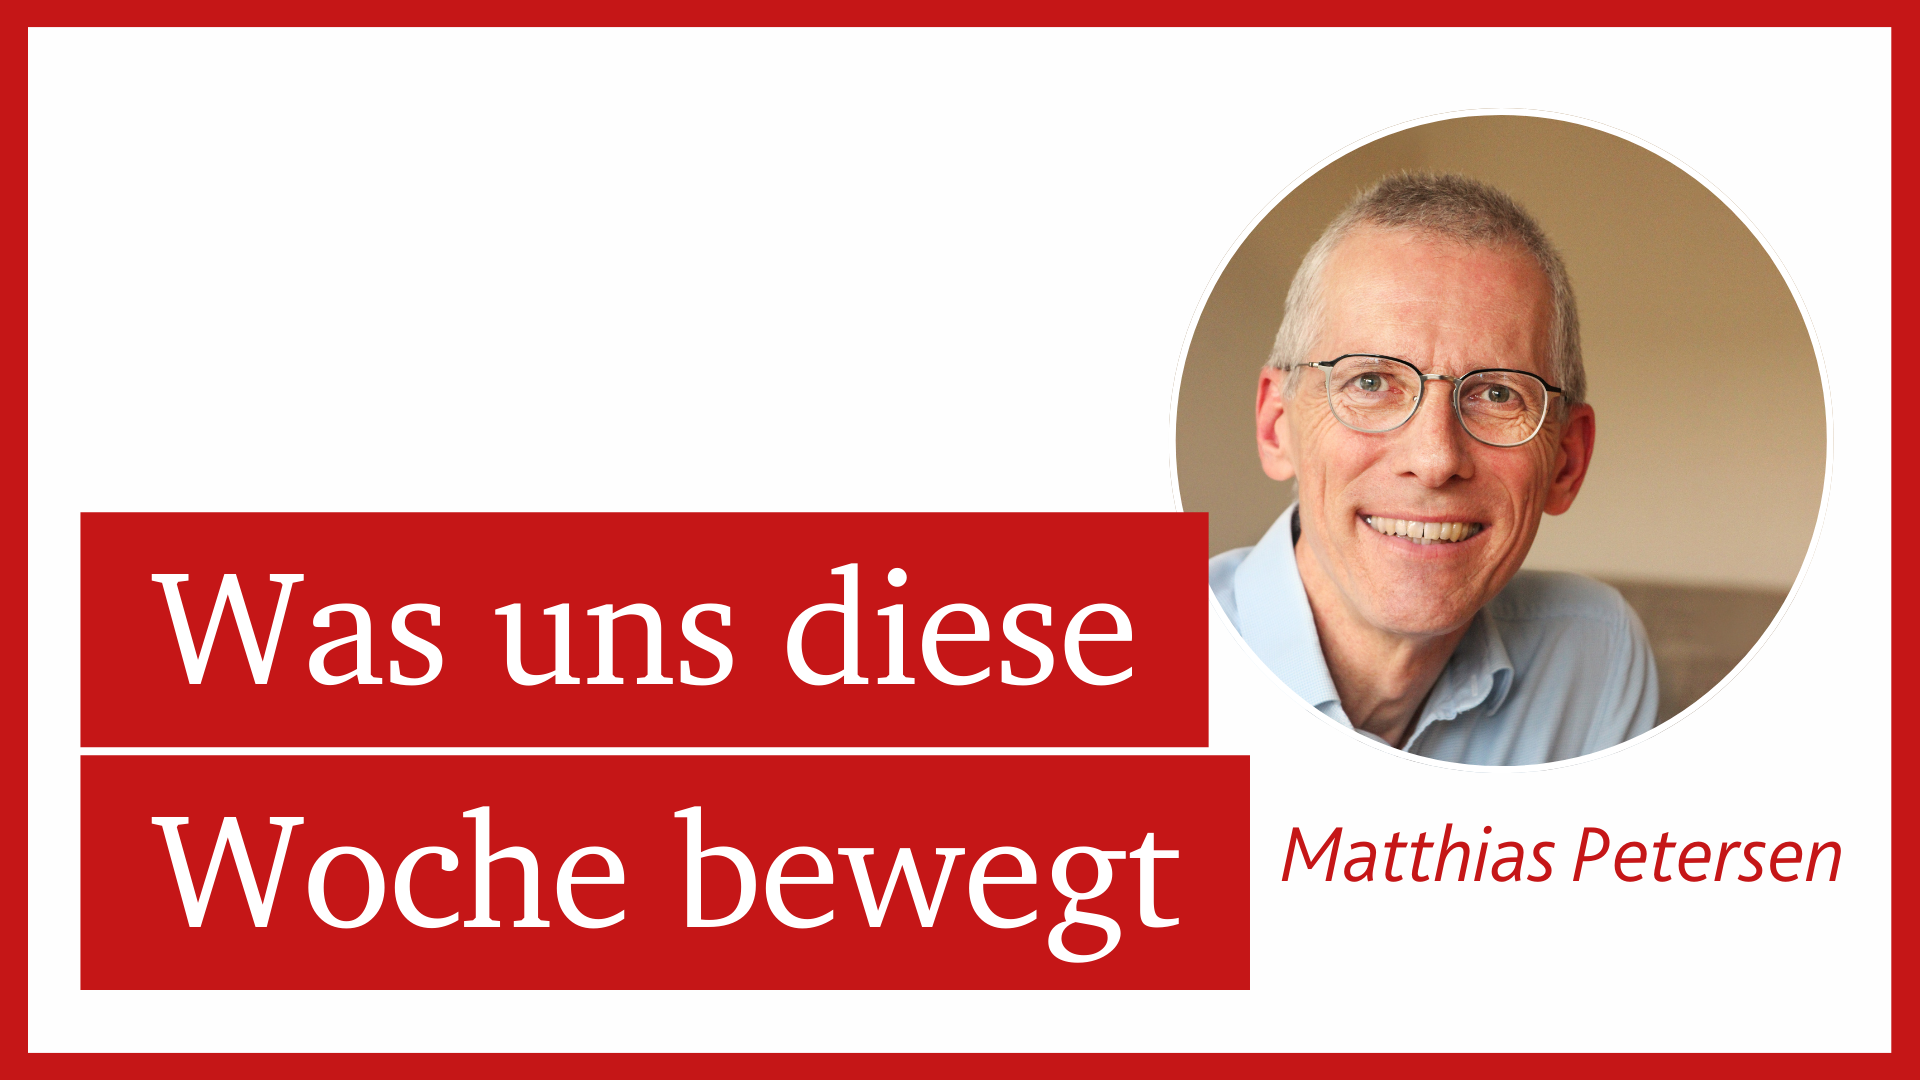 Matthias Petersen